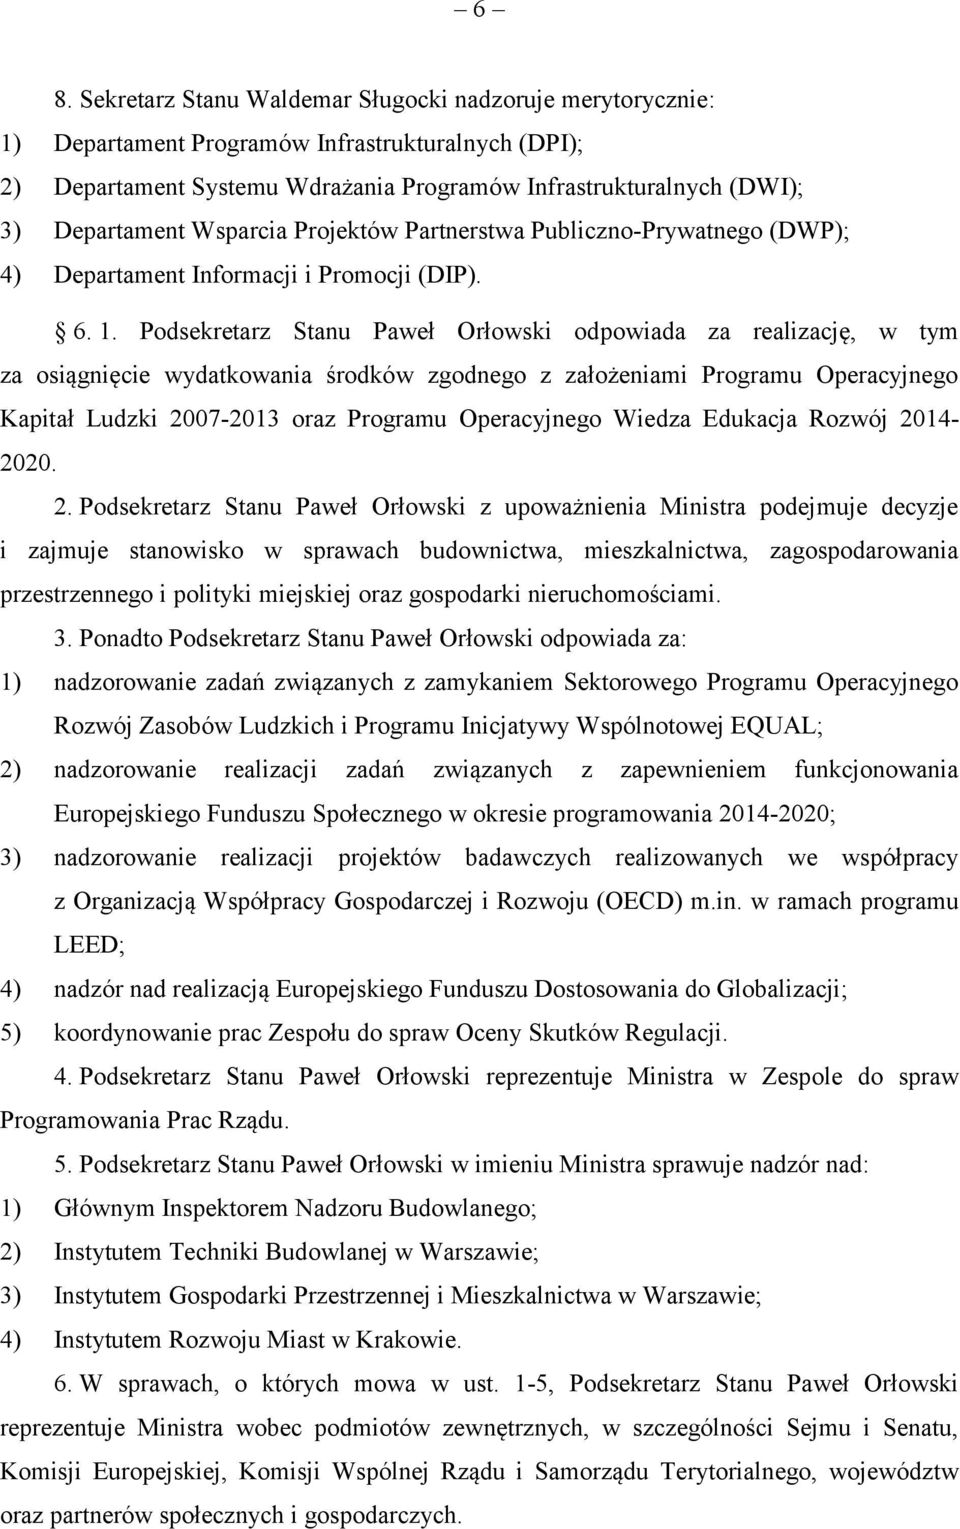 Podsekretarz Stanu Paweł Orłowski odpowiada za realizację, w tym za osiągnięcie wydatkowania środków zgodnego z założeniami Programu Operacyjnego Kapitał Ludzki 2007-2013 oraz Programu Operacyjnego